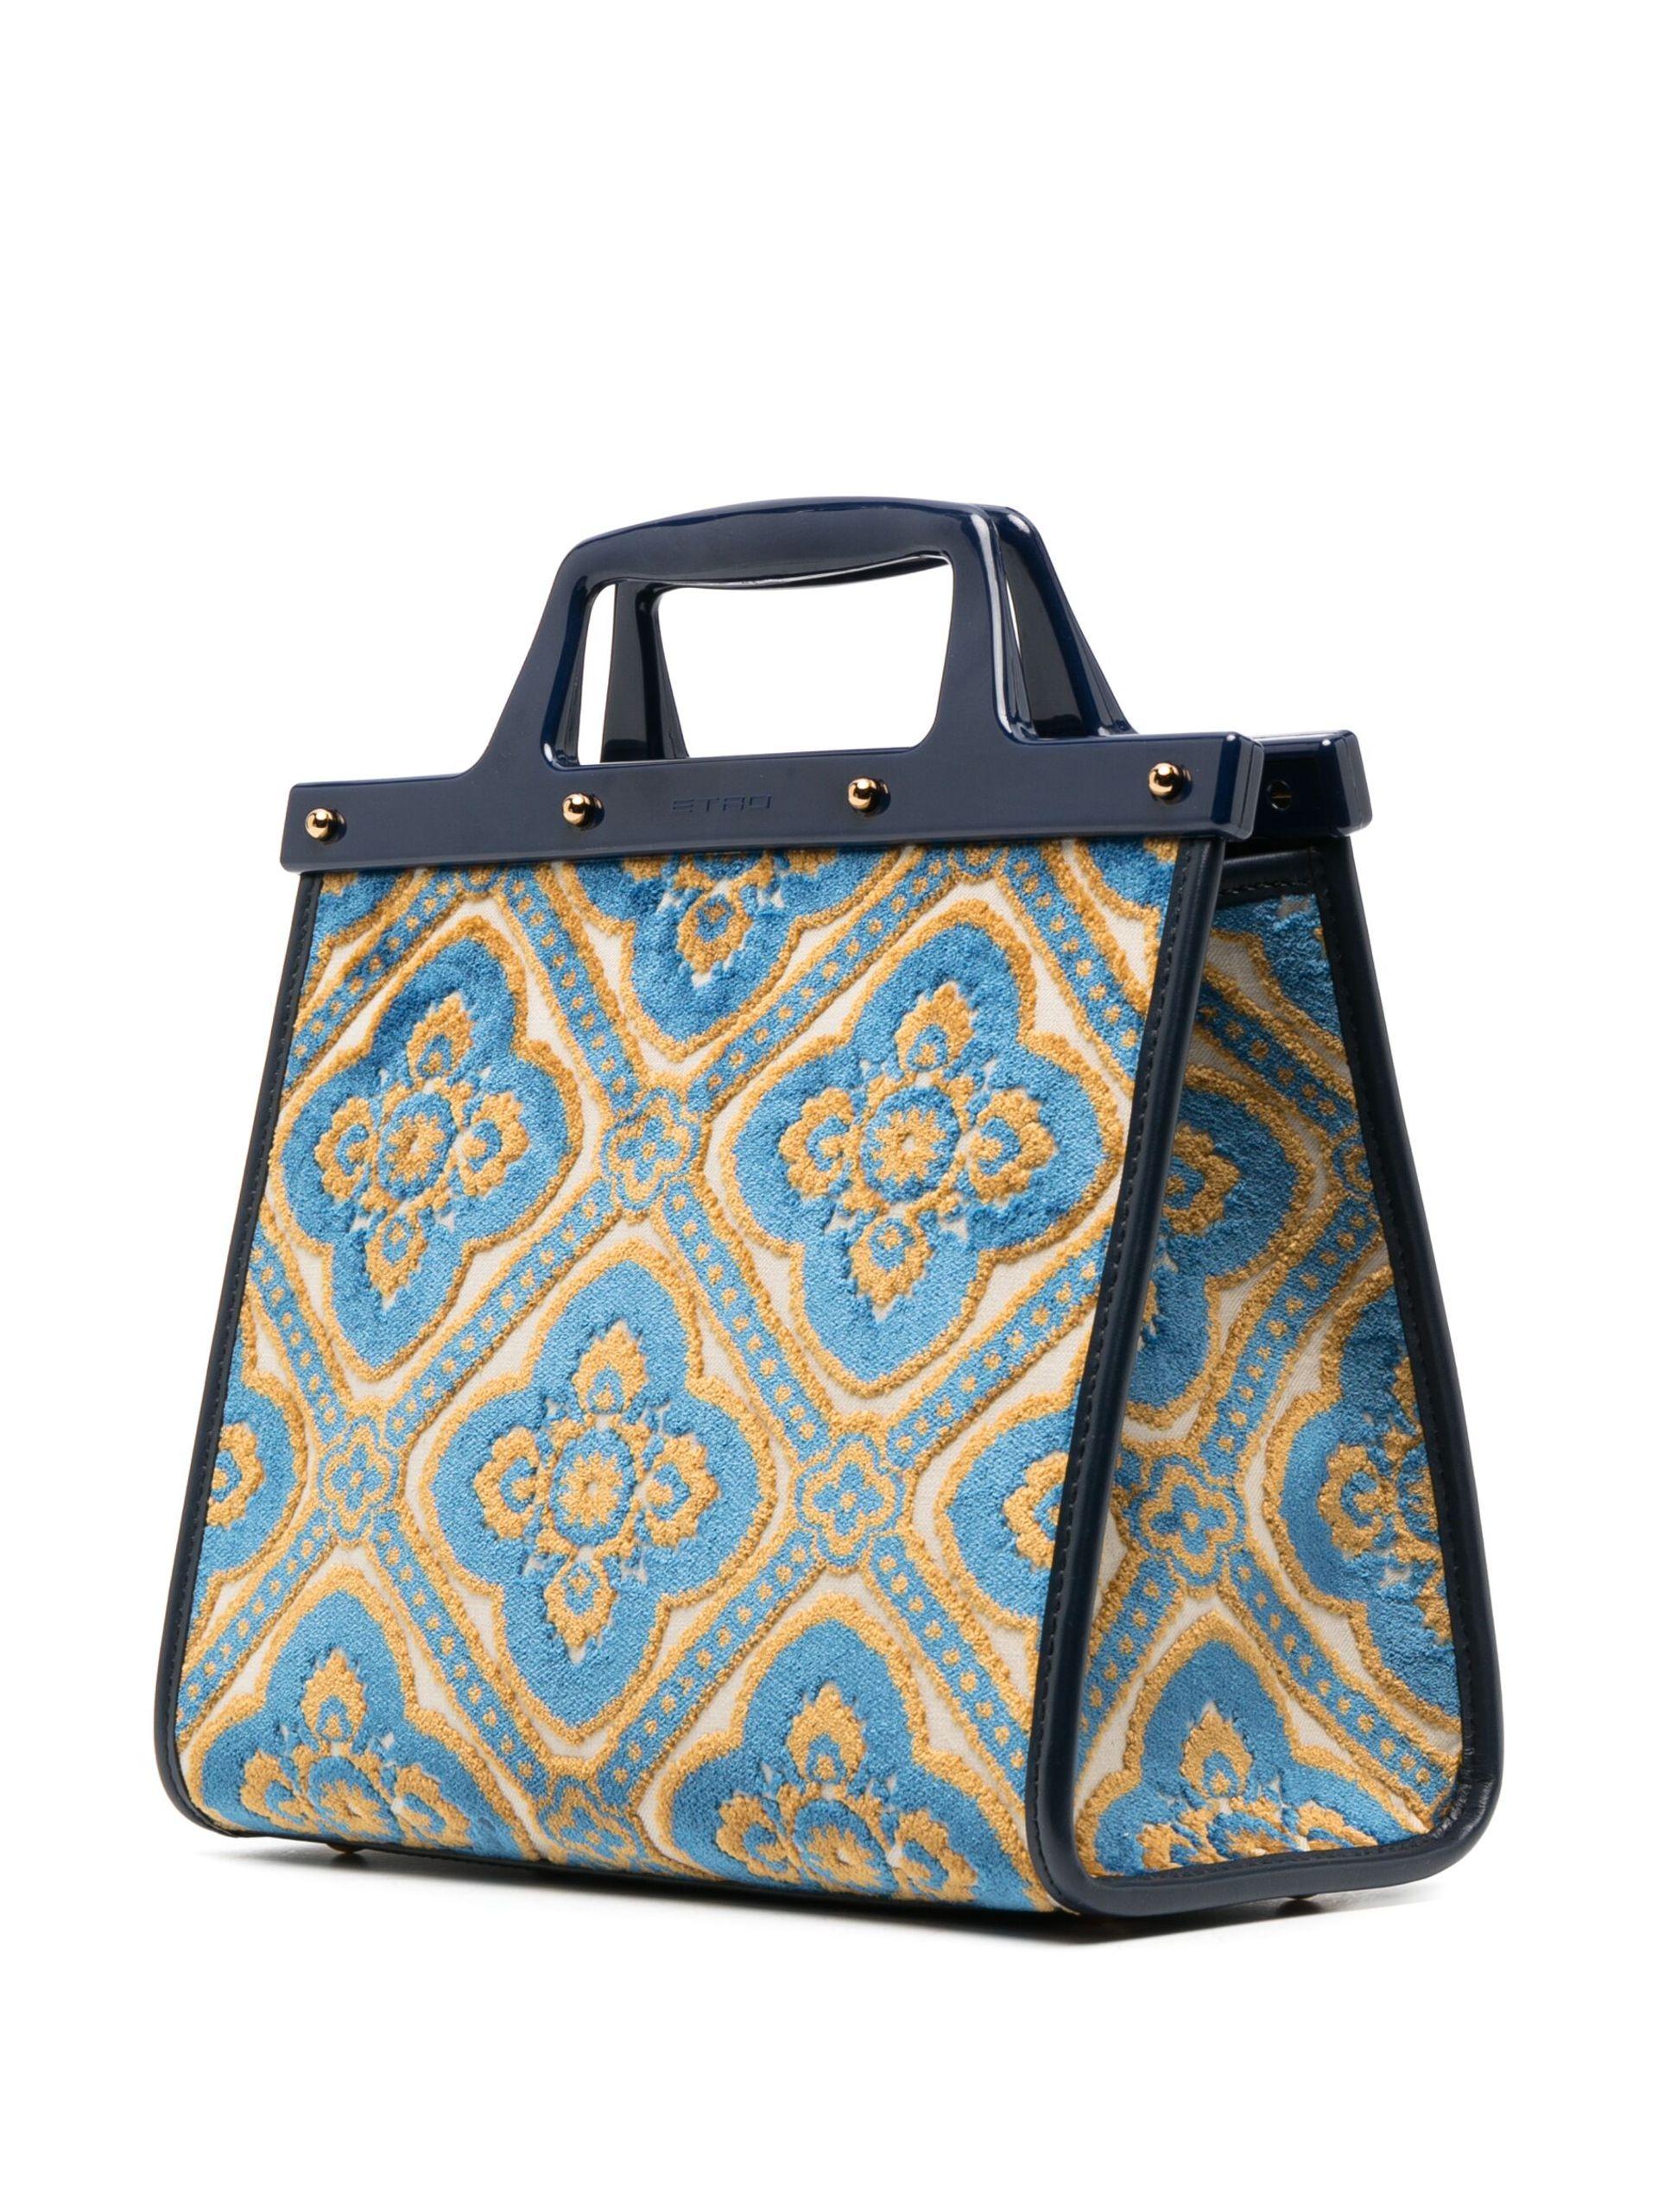 Love Trotter Medium Jacquard Tote Bag in Multicoloured - Etro